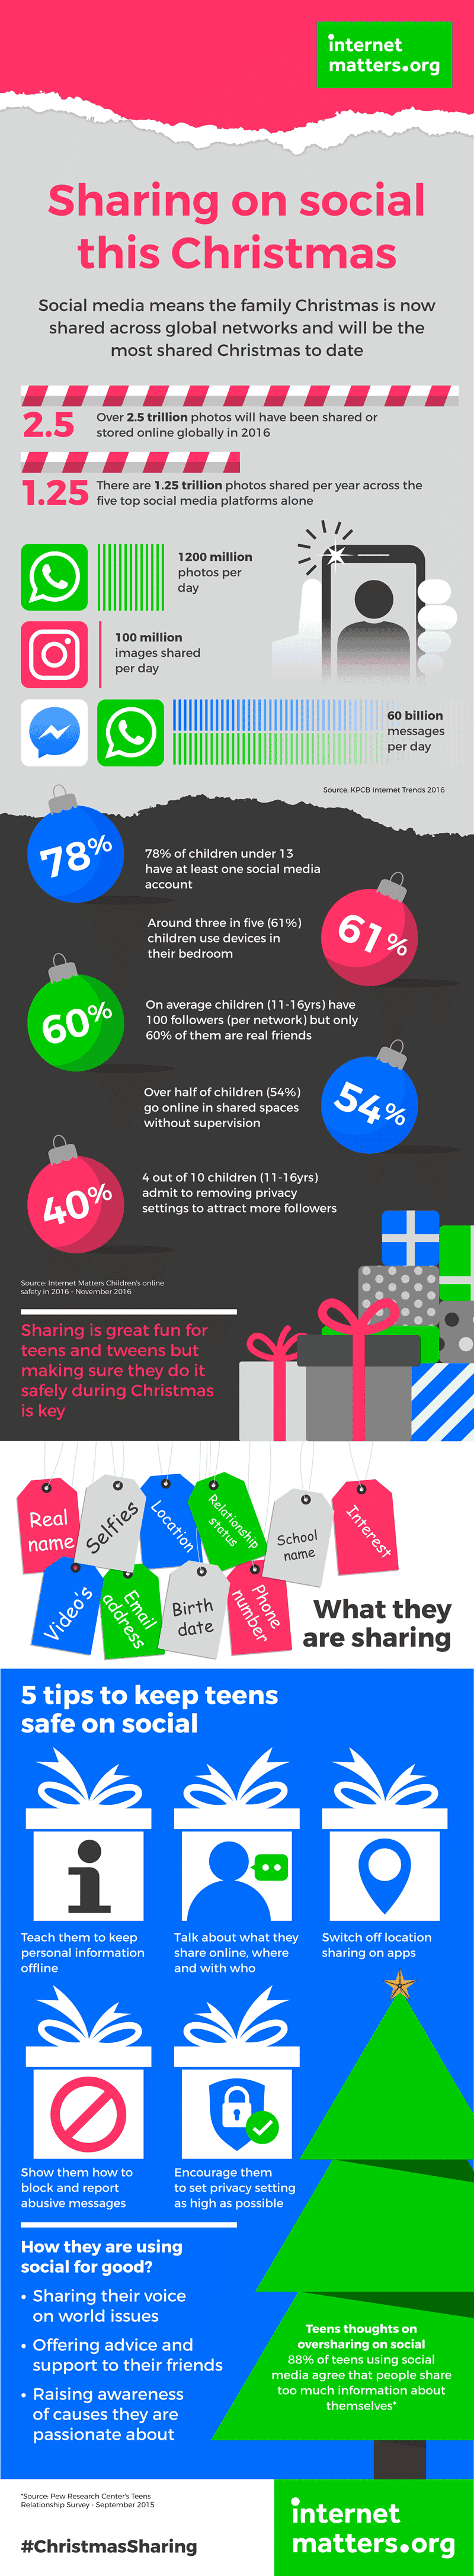 Ponieważ święta Bożego Narodzenia będą najbardziej połączone w historii, 7 miliardów zdjęć zostanie udostępnionych w grudniu 25th w mediach społecznościowych. Zobacz inne statystyki dotyczące udostępniania społecznościowego i wskazówki, jak pomagać dzieciom bezpiecznie udostępniać online.